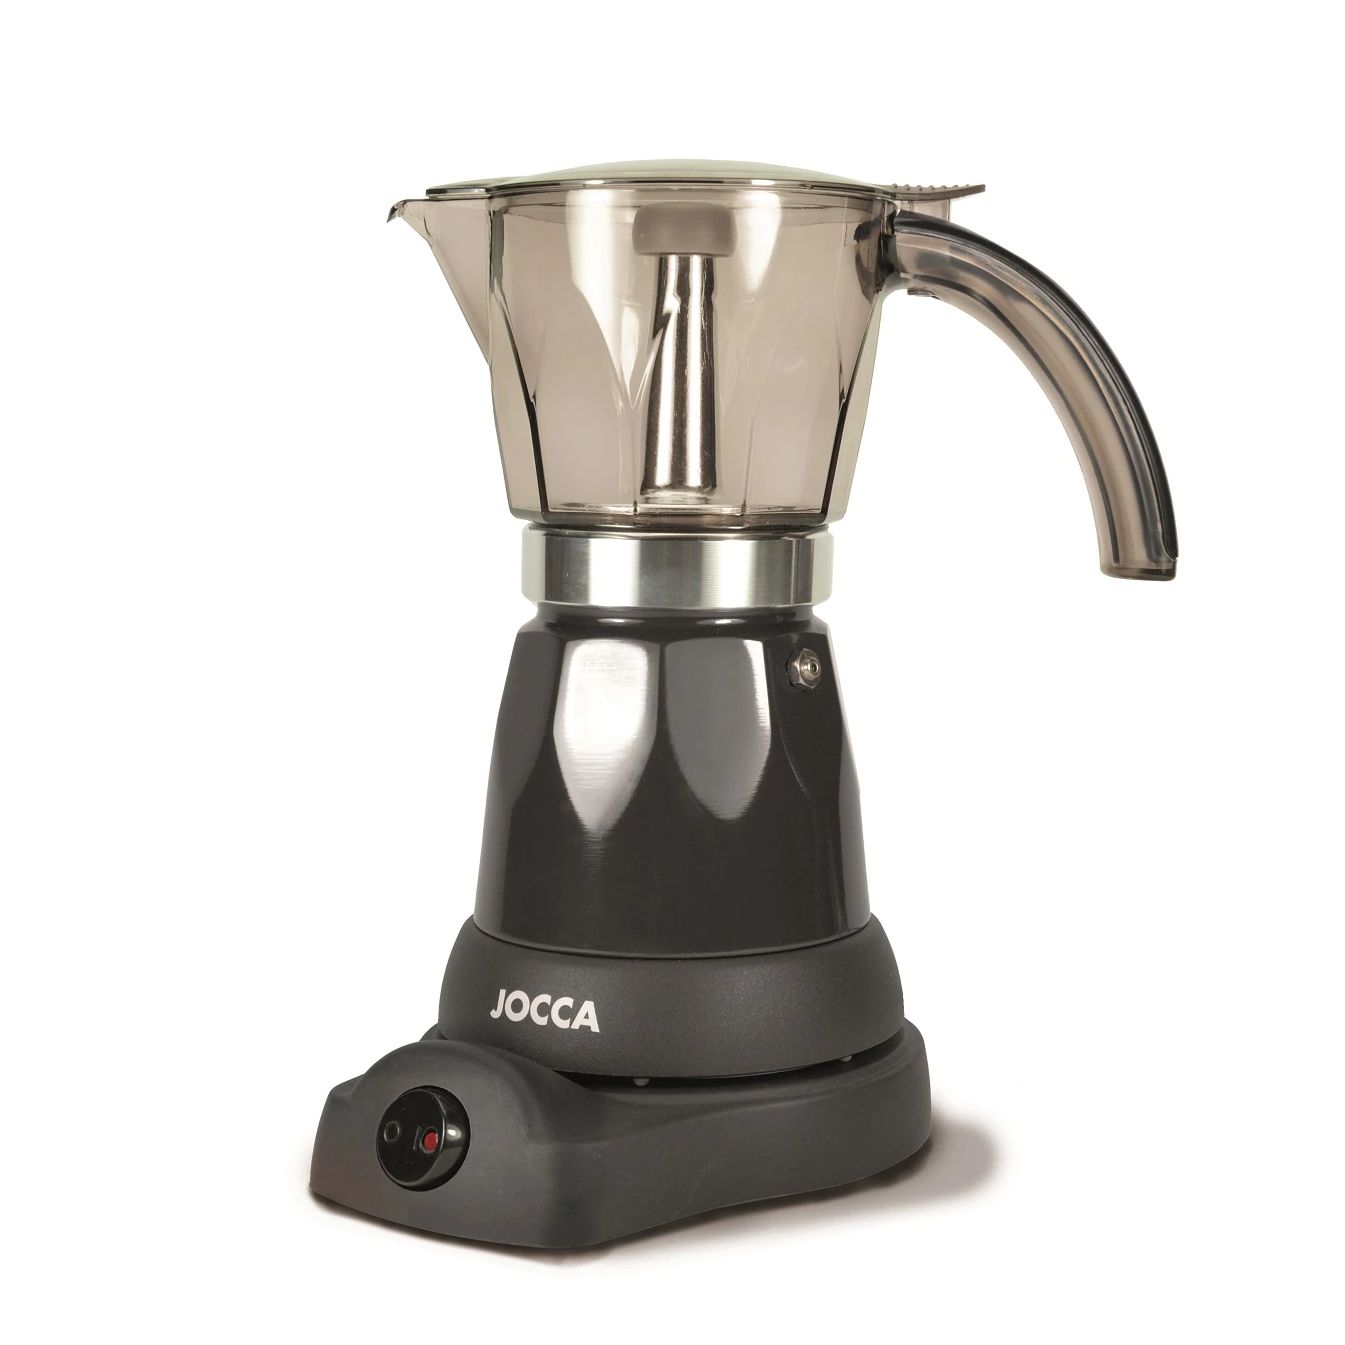 JOCCA-machine-caf-induction-lectrique-et-portable-Expresso-italien-pour-6-tasses-professionnelles-Th-i-re